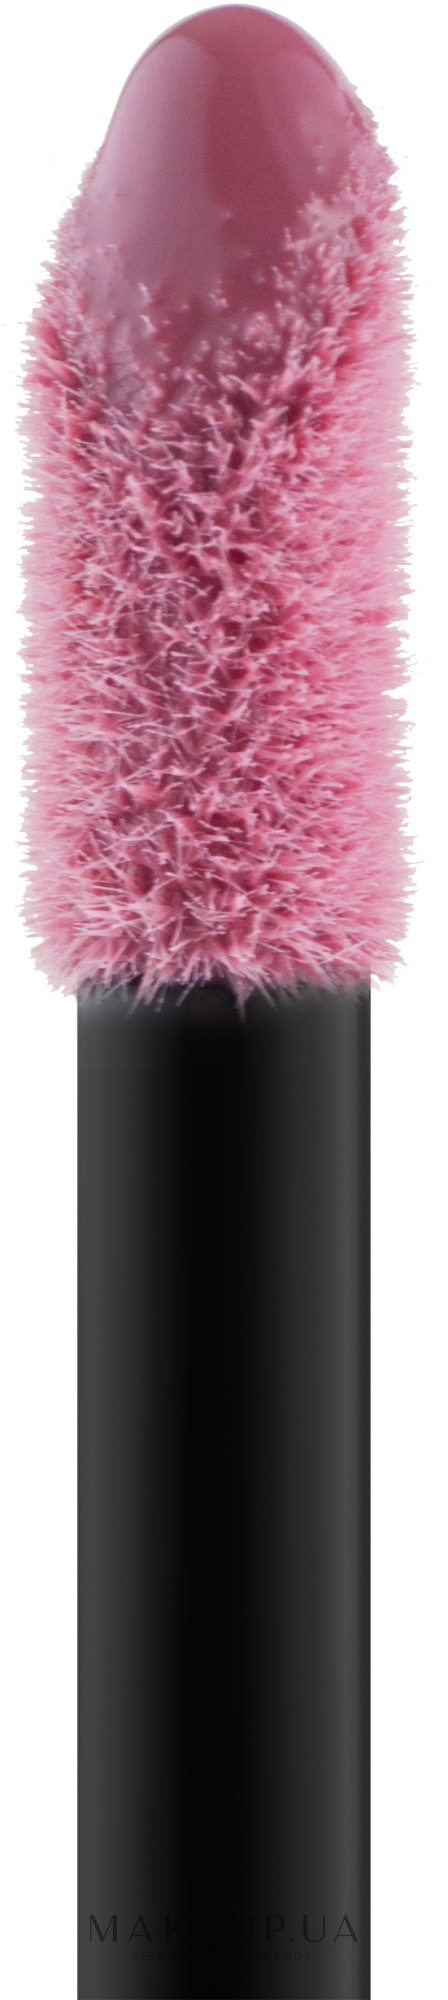 ПОДАРОК! Блеск для губ - Bourjois Gloss Fabuleux Lip  — фото 07 - Standing Rose Vation